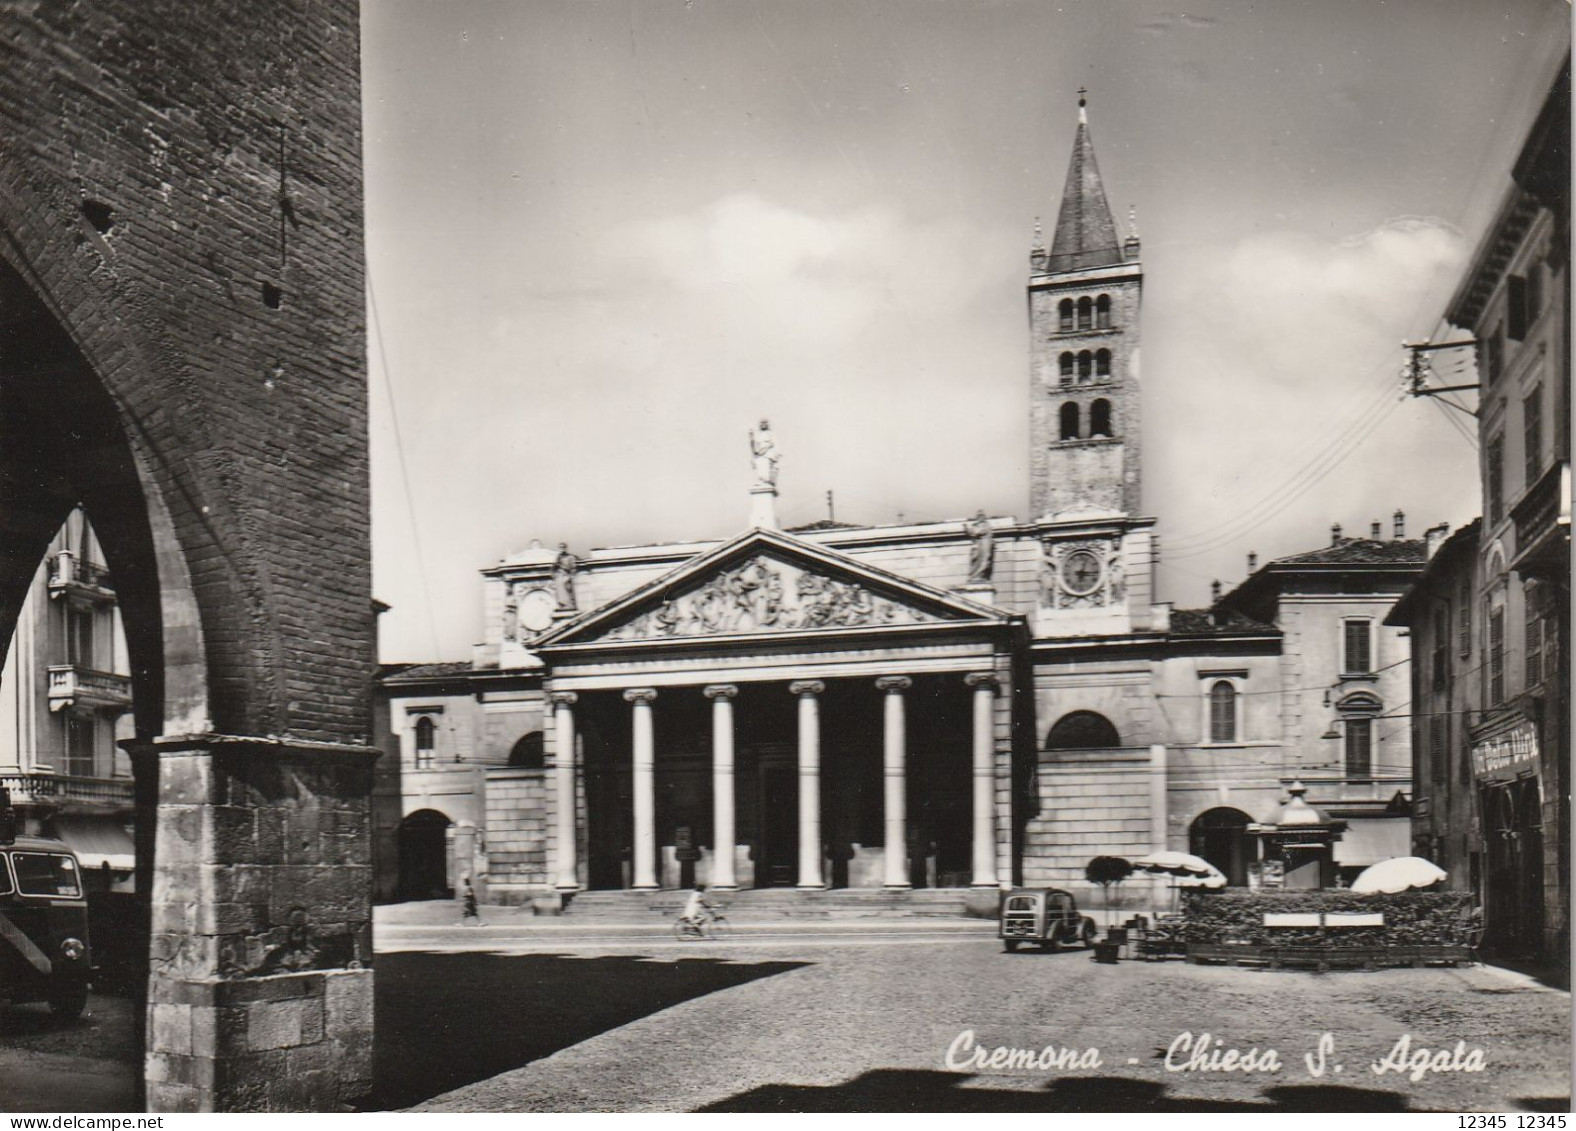 Cremona, Chiesa S. Agata - Cremona